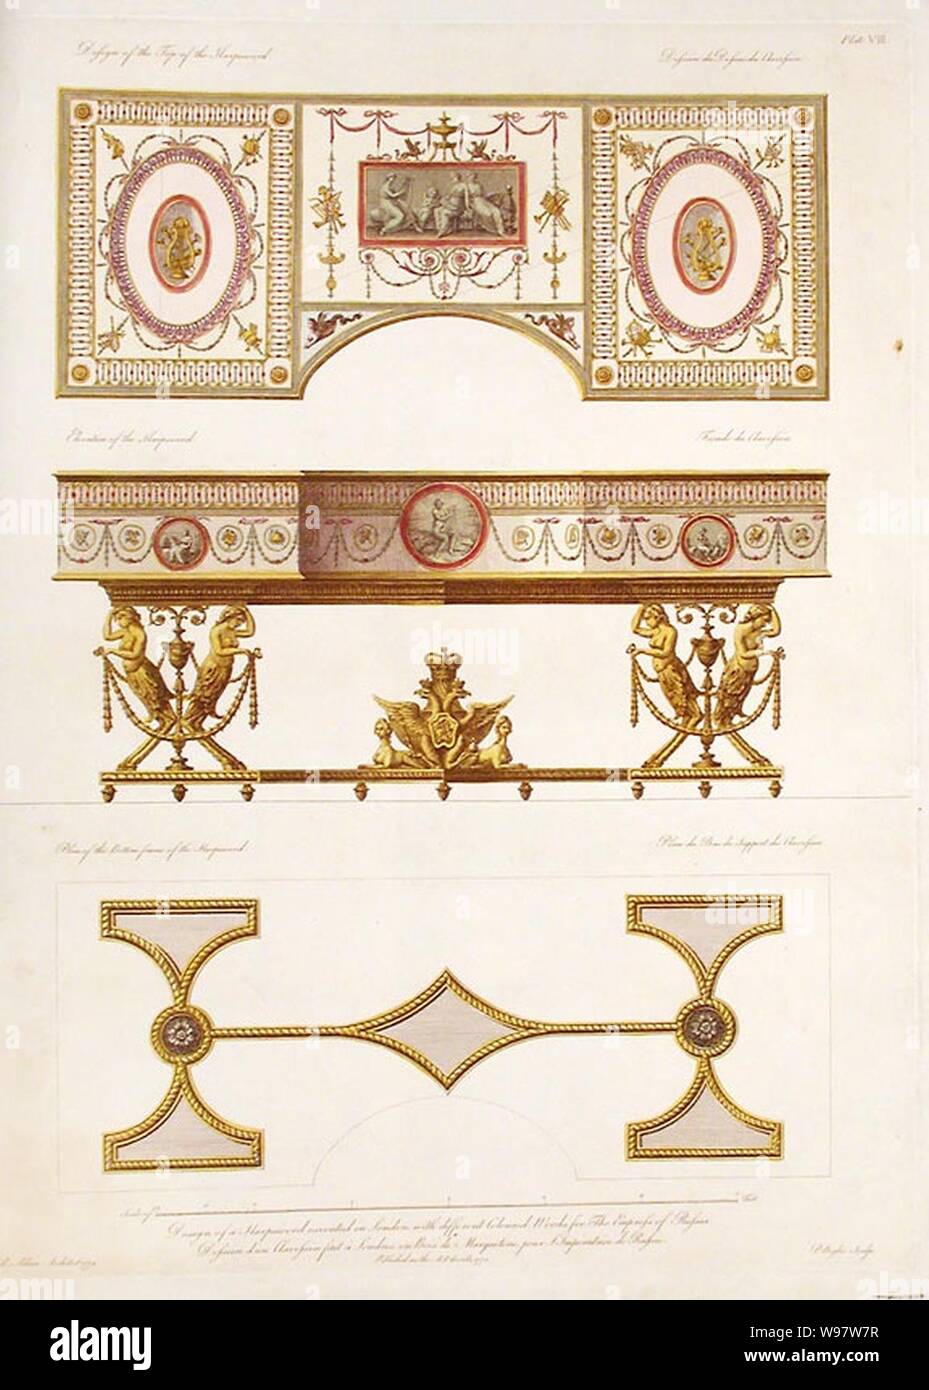 Progettazione di un cembalo per l'imperatrice di Russia. Foto Stock